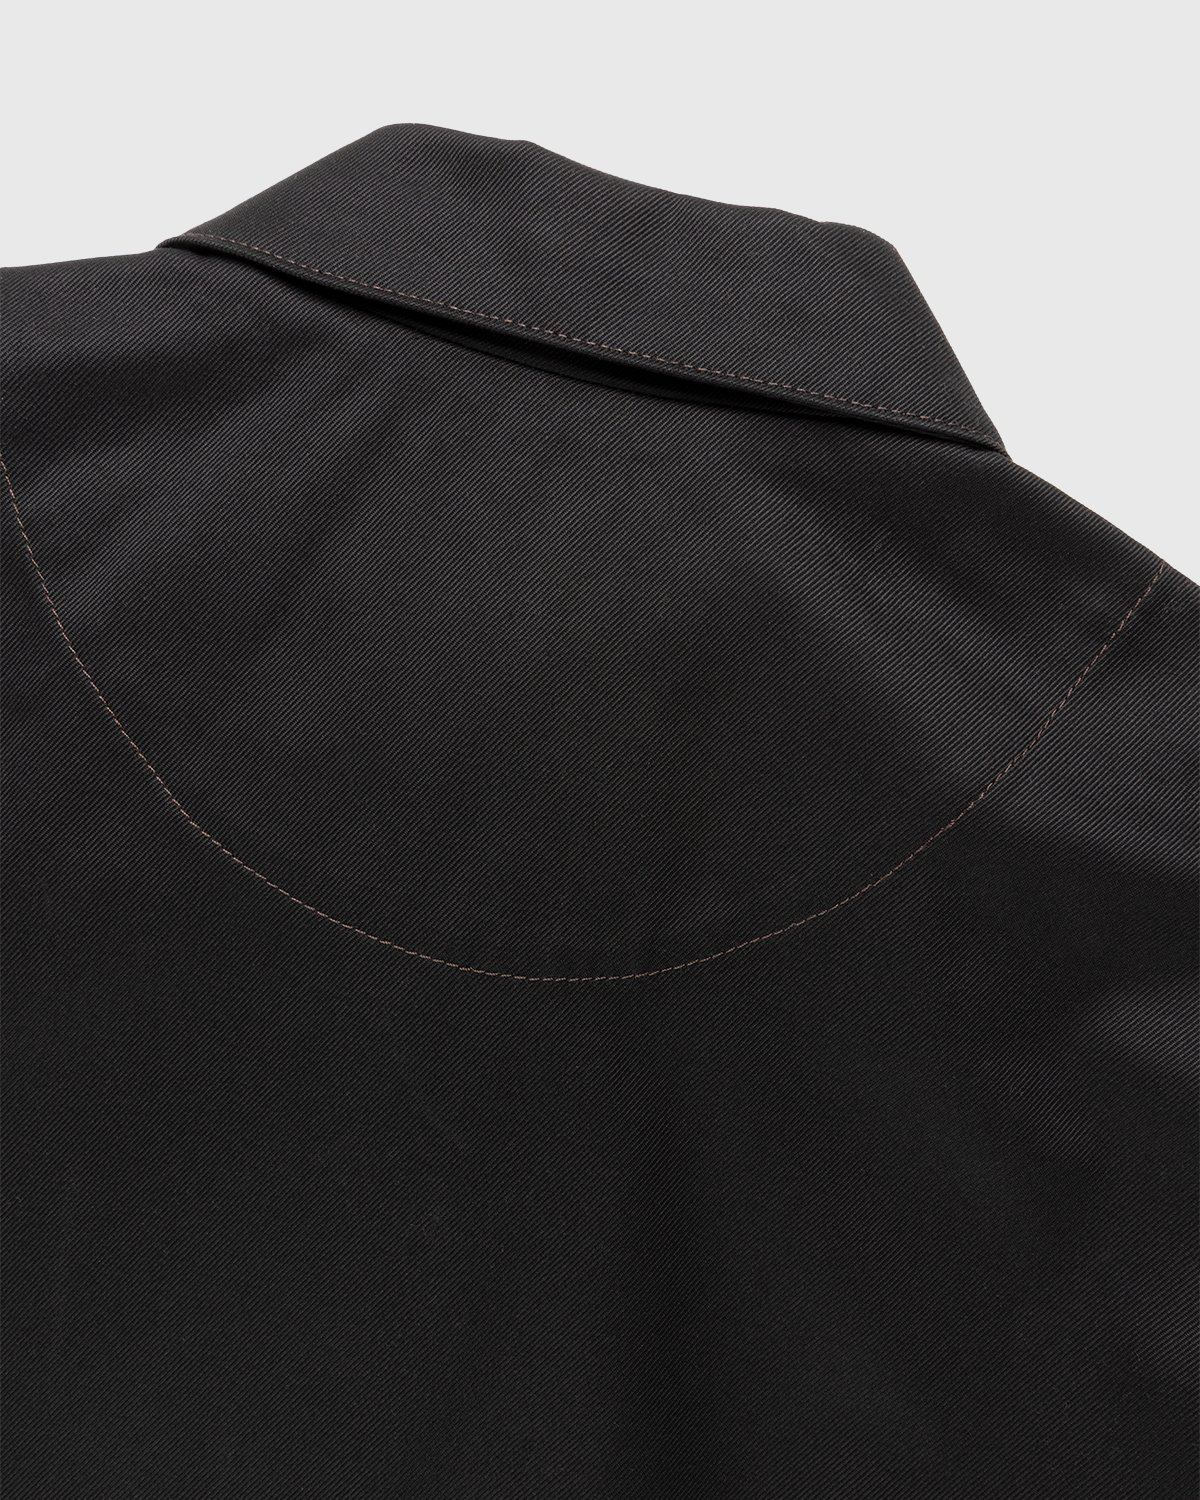 Acne Studios - Cotton Twill Jacket Black - Clothing - Black - Image 3